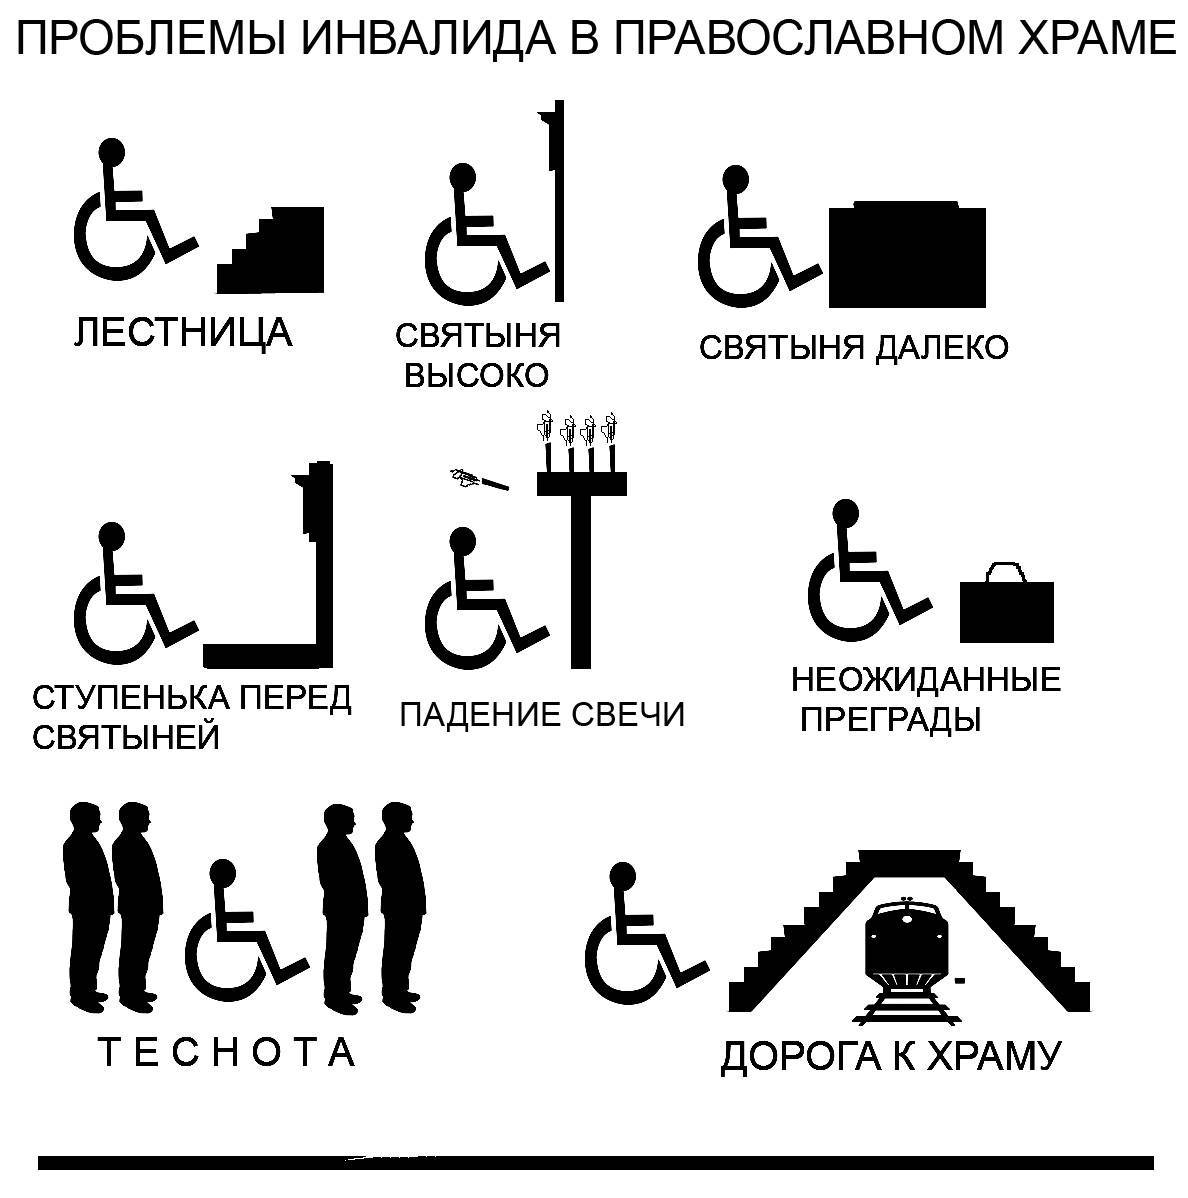 Проблемы инвалидов (социальные и медицинские, бытовые трудности), пути их решения